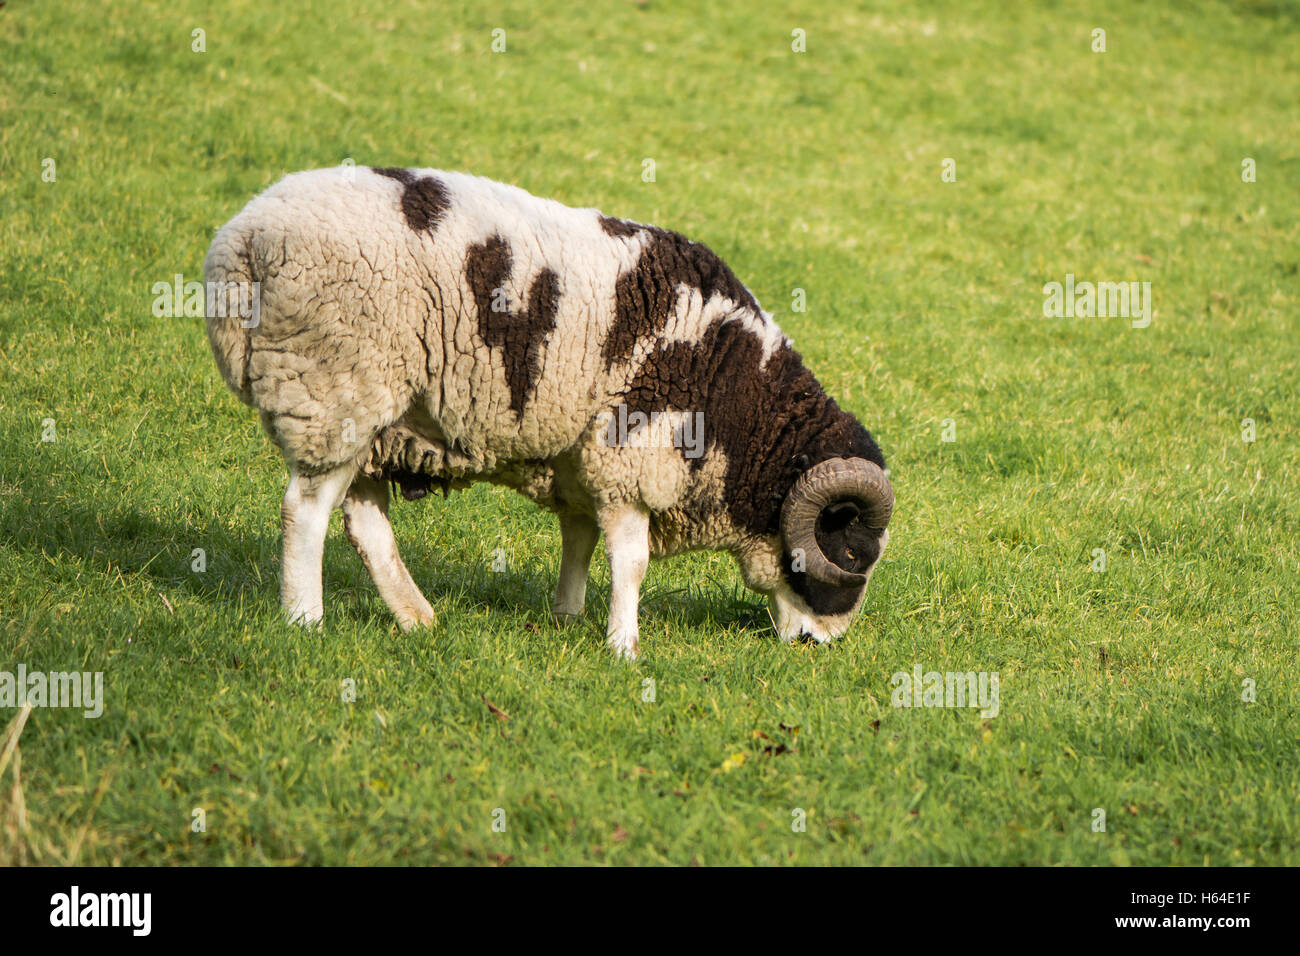 Deux moutons Jacob pedigree corne ram. Brun et blanc rare piebald moutons, gardés comme animaux d'ornement, avec deux cornes courbes Banque D'Images